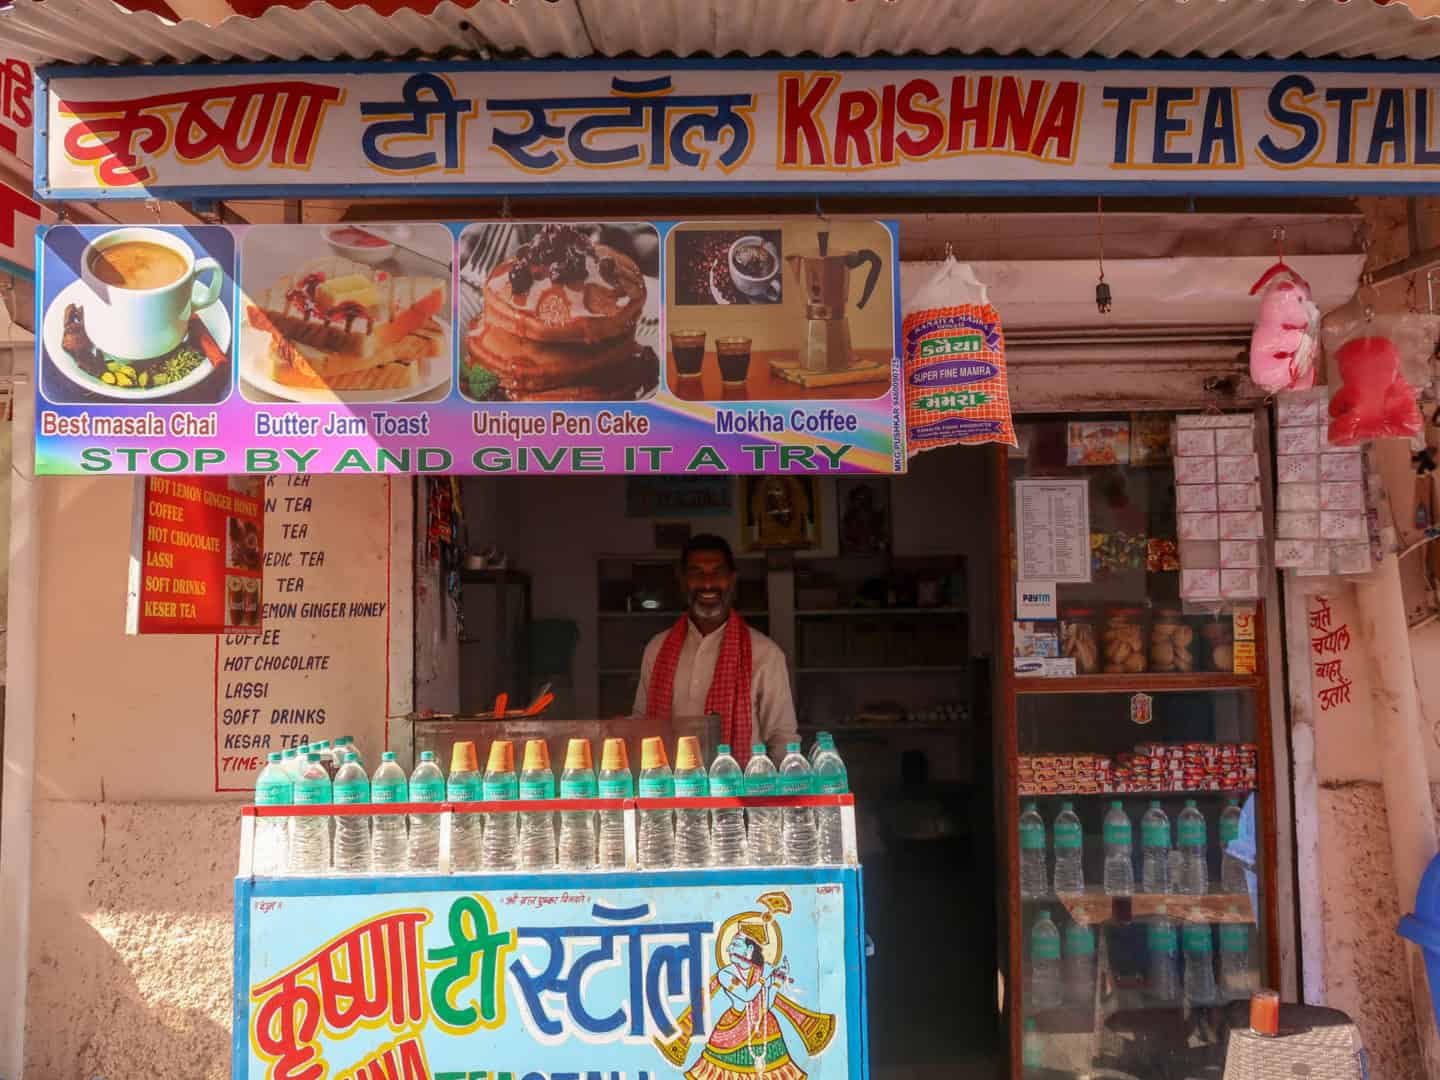 Krishna tea stand pushkar